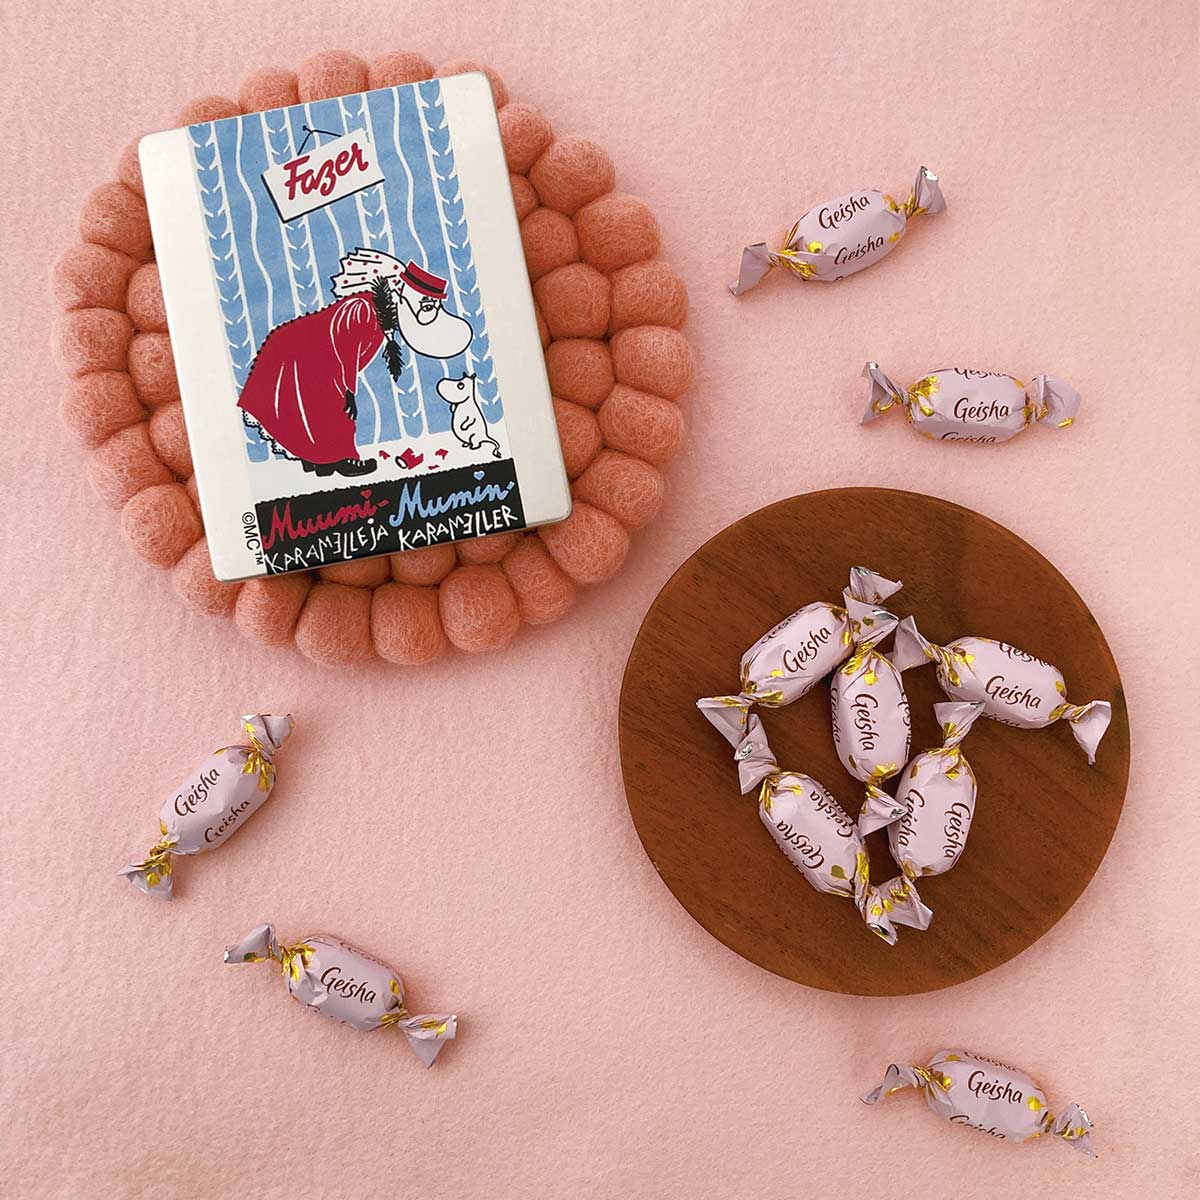 FAZER ファッツェル × Moomin ムーミン Geisha ゲイシャ ミルクチョコレート ヴィンテージアート缶 ( ヘムレンおばさんとムーミンパパ / 10粒 )